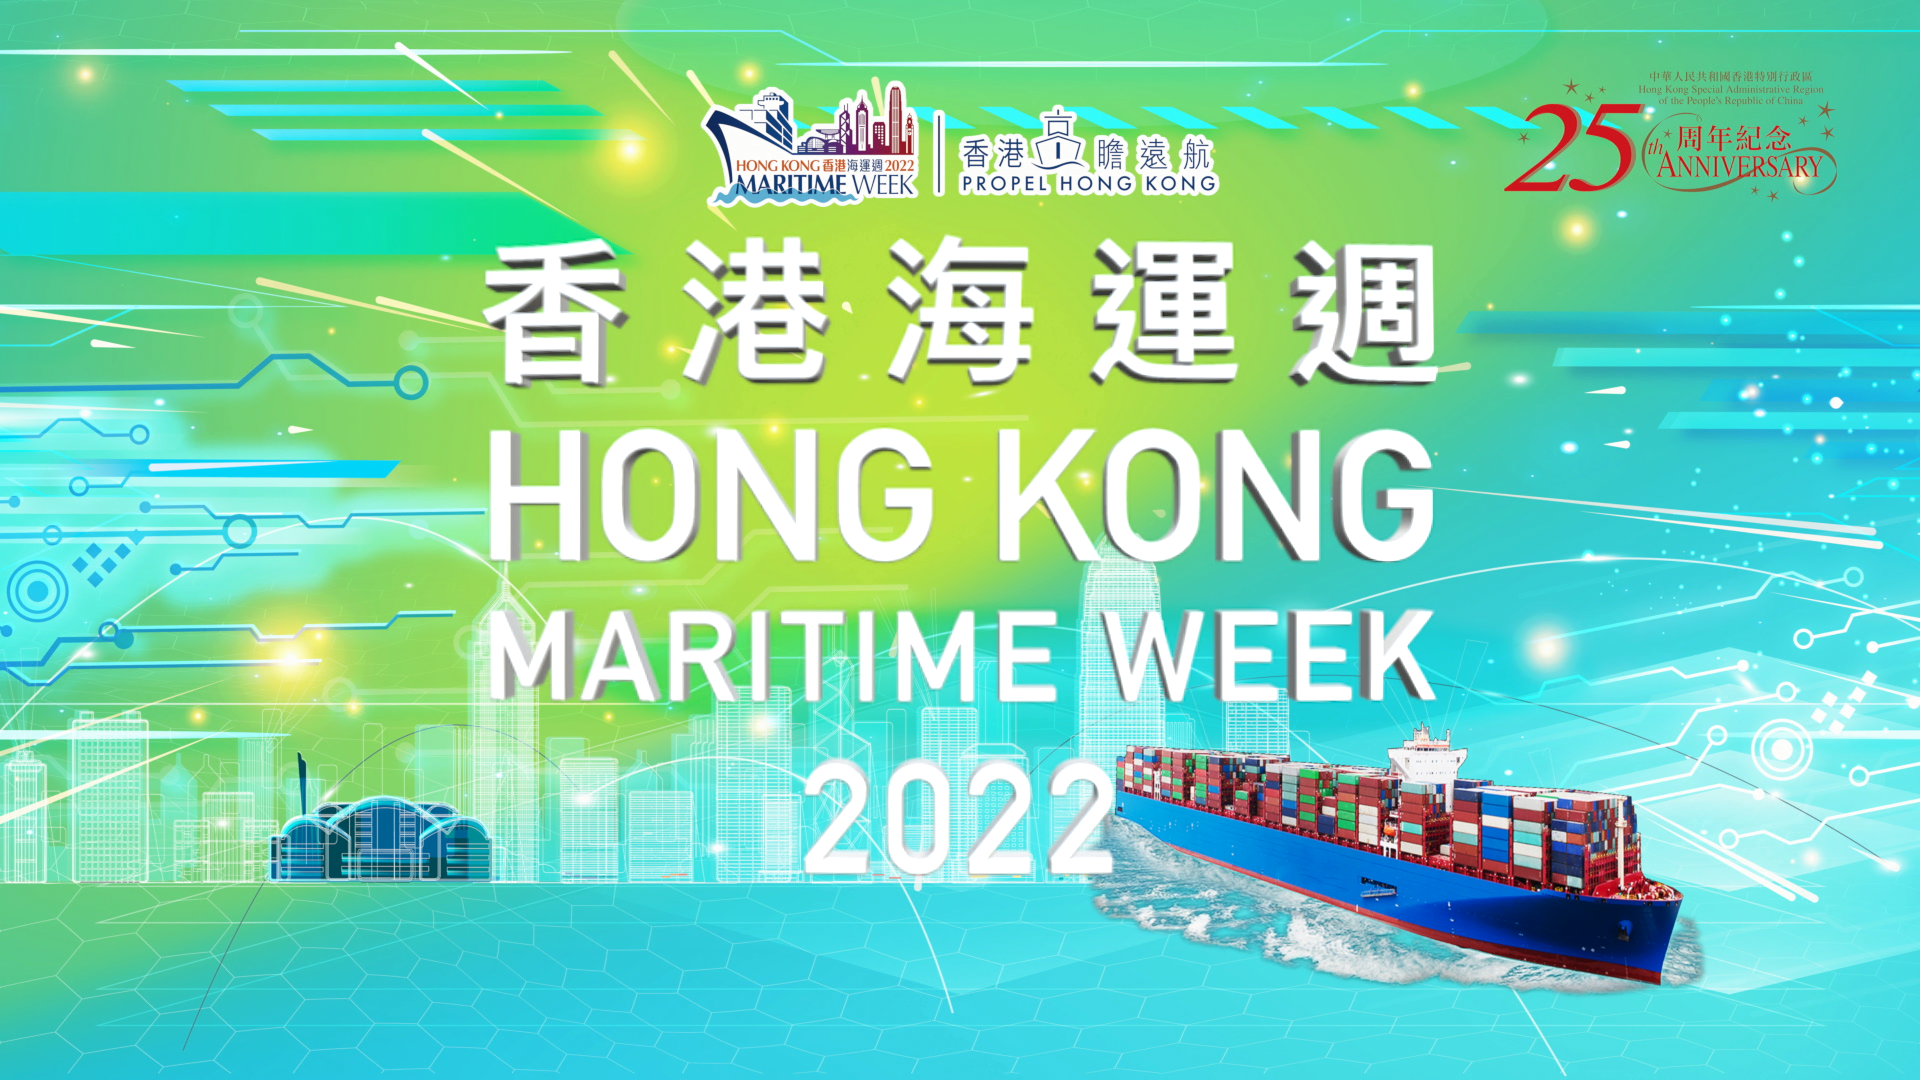 香港海運週2022 - 精彩活動回顧 (純視像檔案)